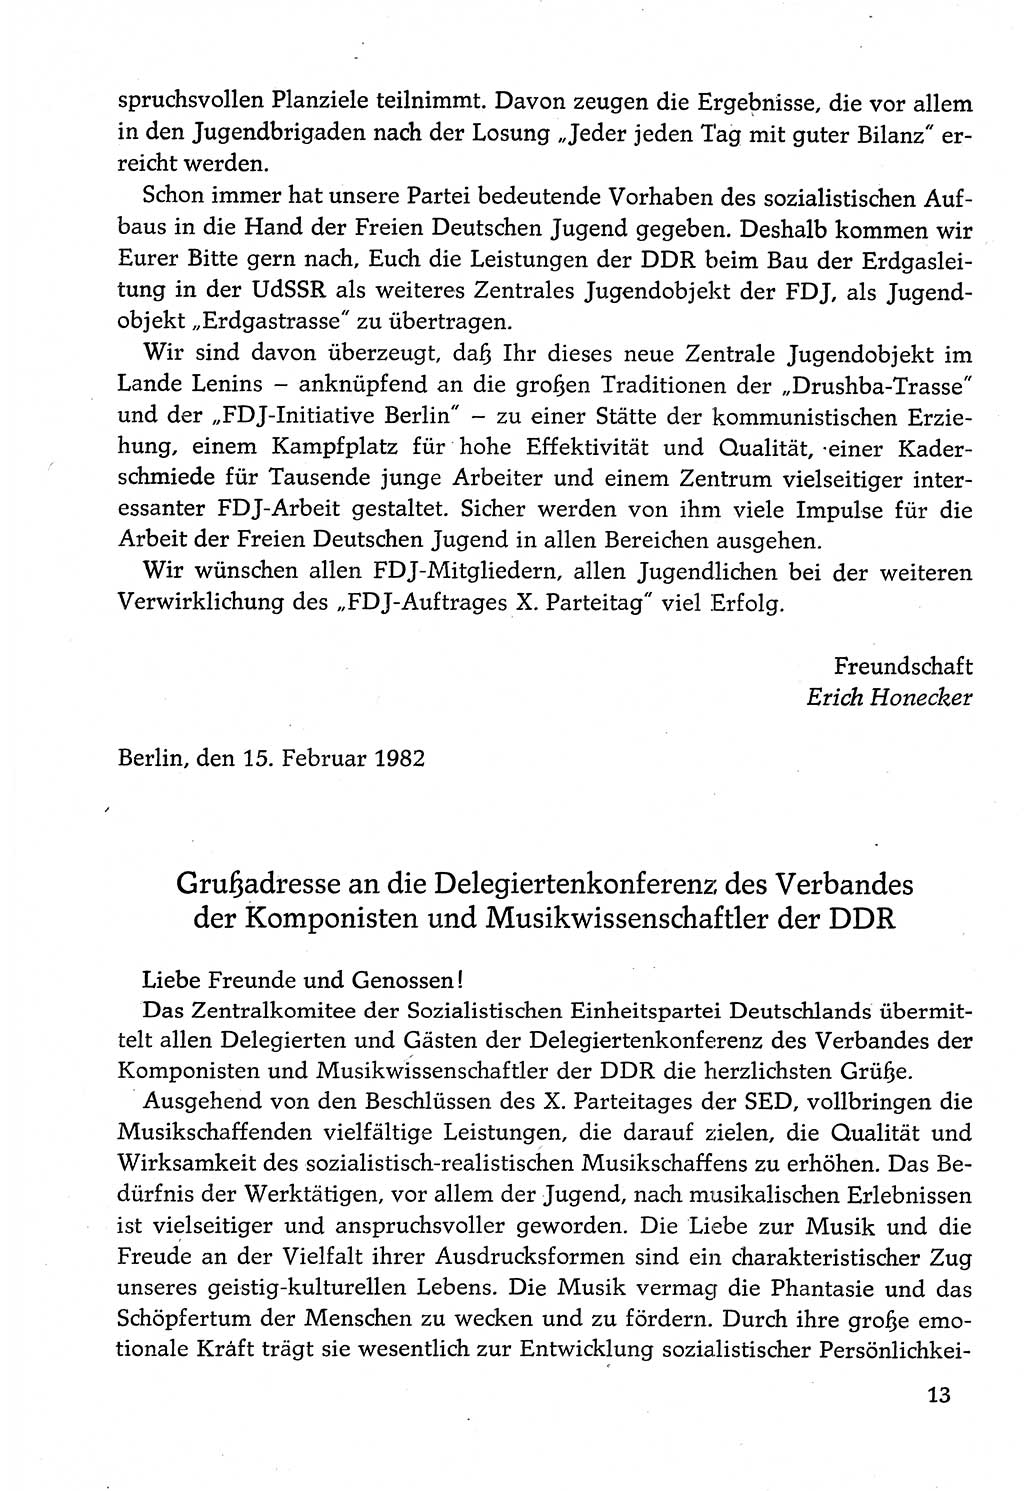 Dokumente der Sozialistischen Einheitspartei Deutschlands (SED) [Deutsche Demokratische Republik (DDR)] 1982-1983, Seite 13 (Dok. SED DDR 1982-1983, S. 13)